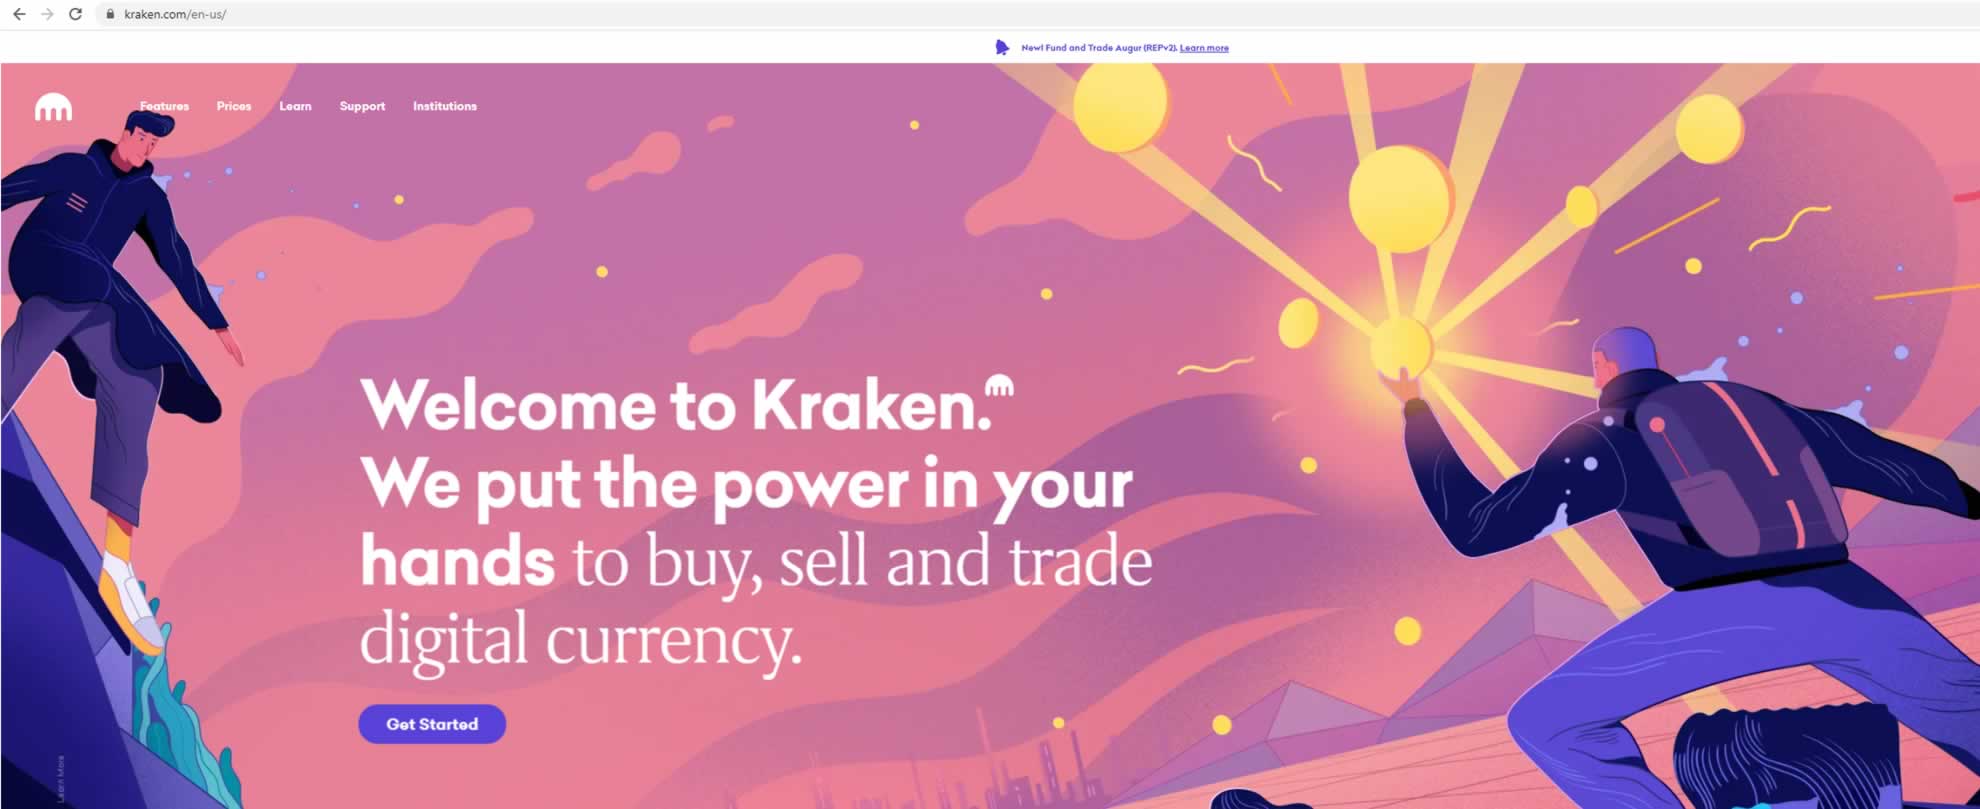 Kraken - US Regulated Bitcoin Exchange - Kraken.com